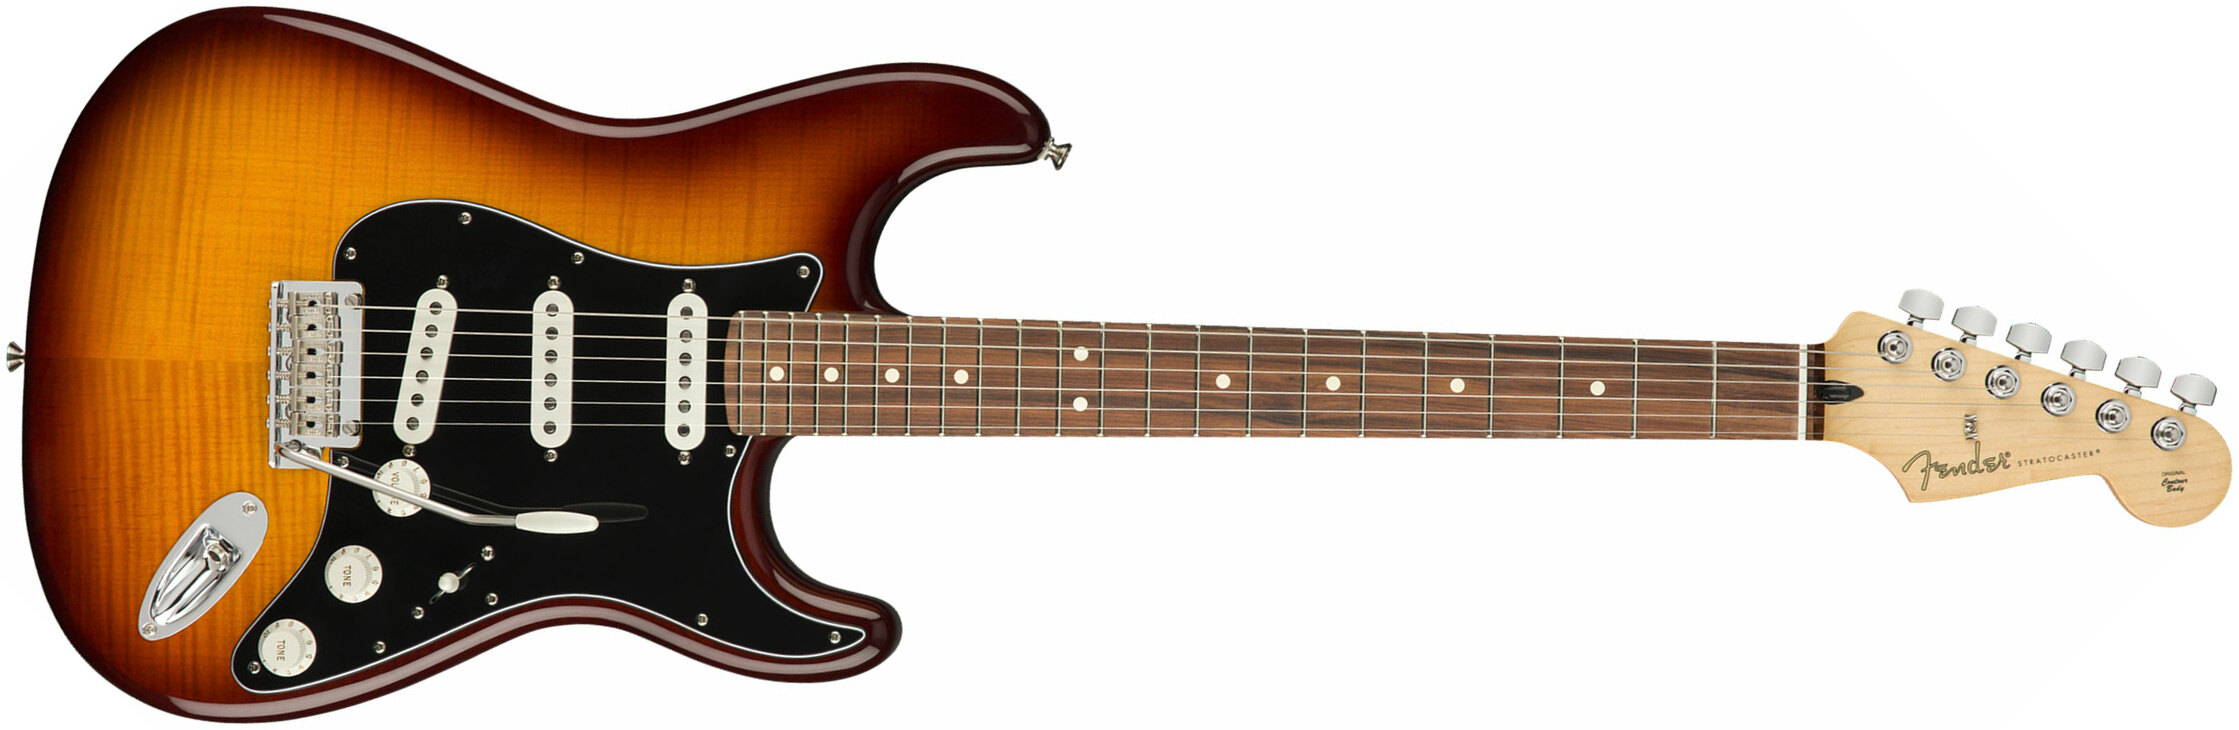 Fender Strat Player Plus Top Mex 3s Trem Pf - Tobacco Burst - Elektrische gitaar in Str-vorm - Main picture